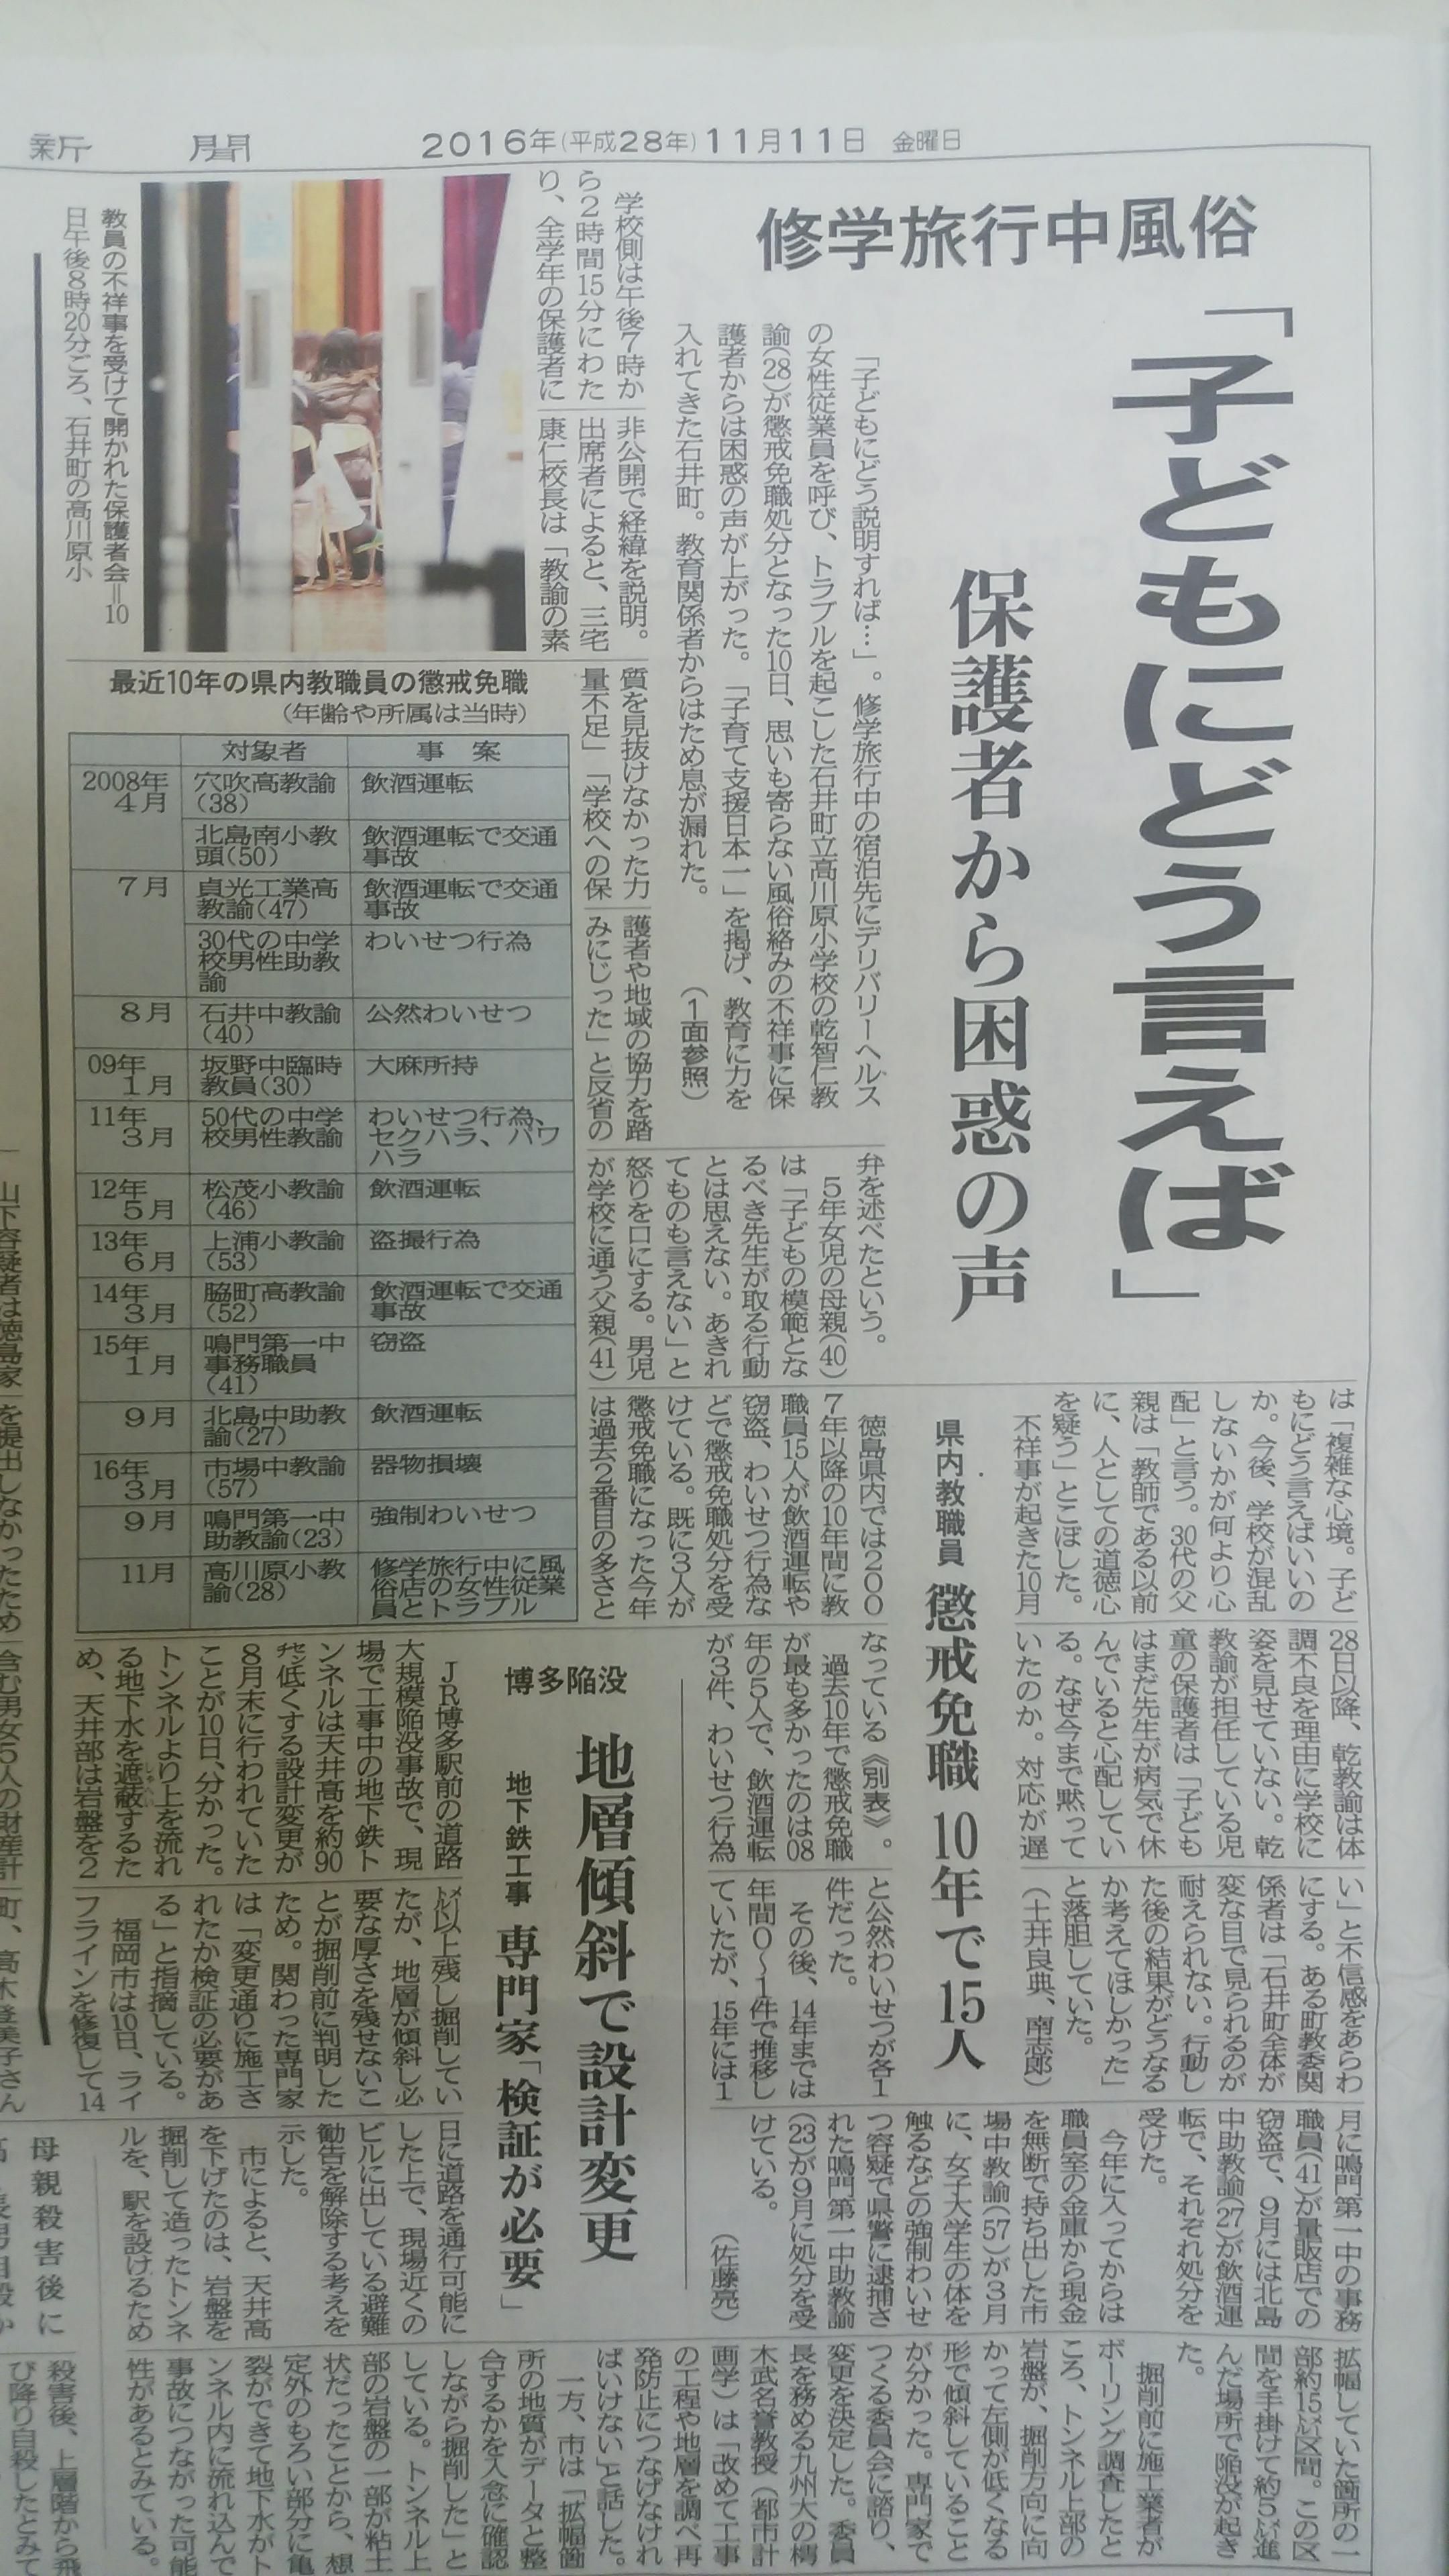 懲戒解雇となったとなった教師を実名報道した徳島新聞